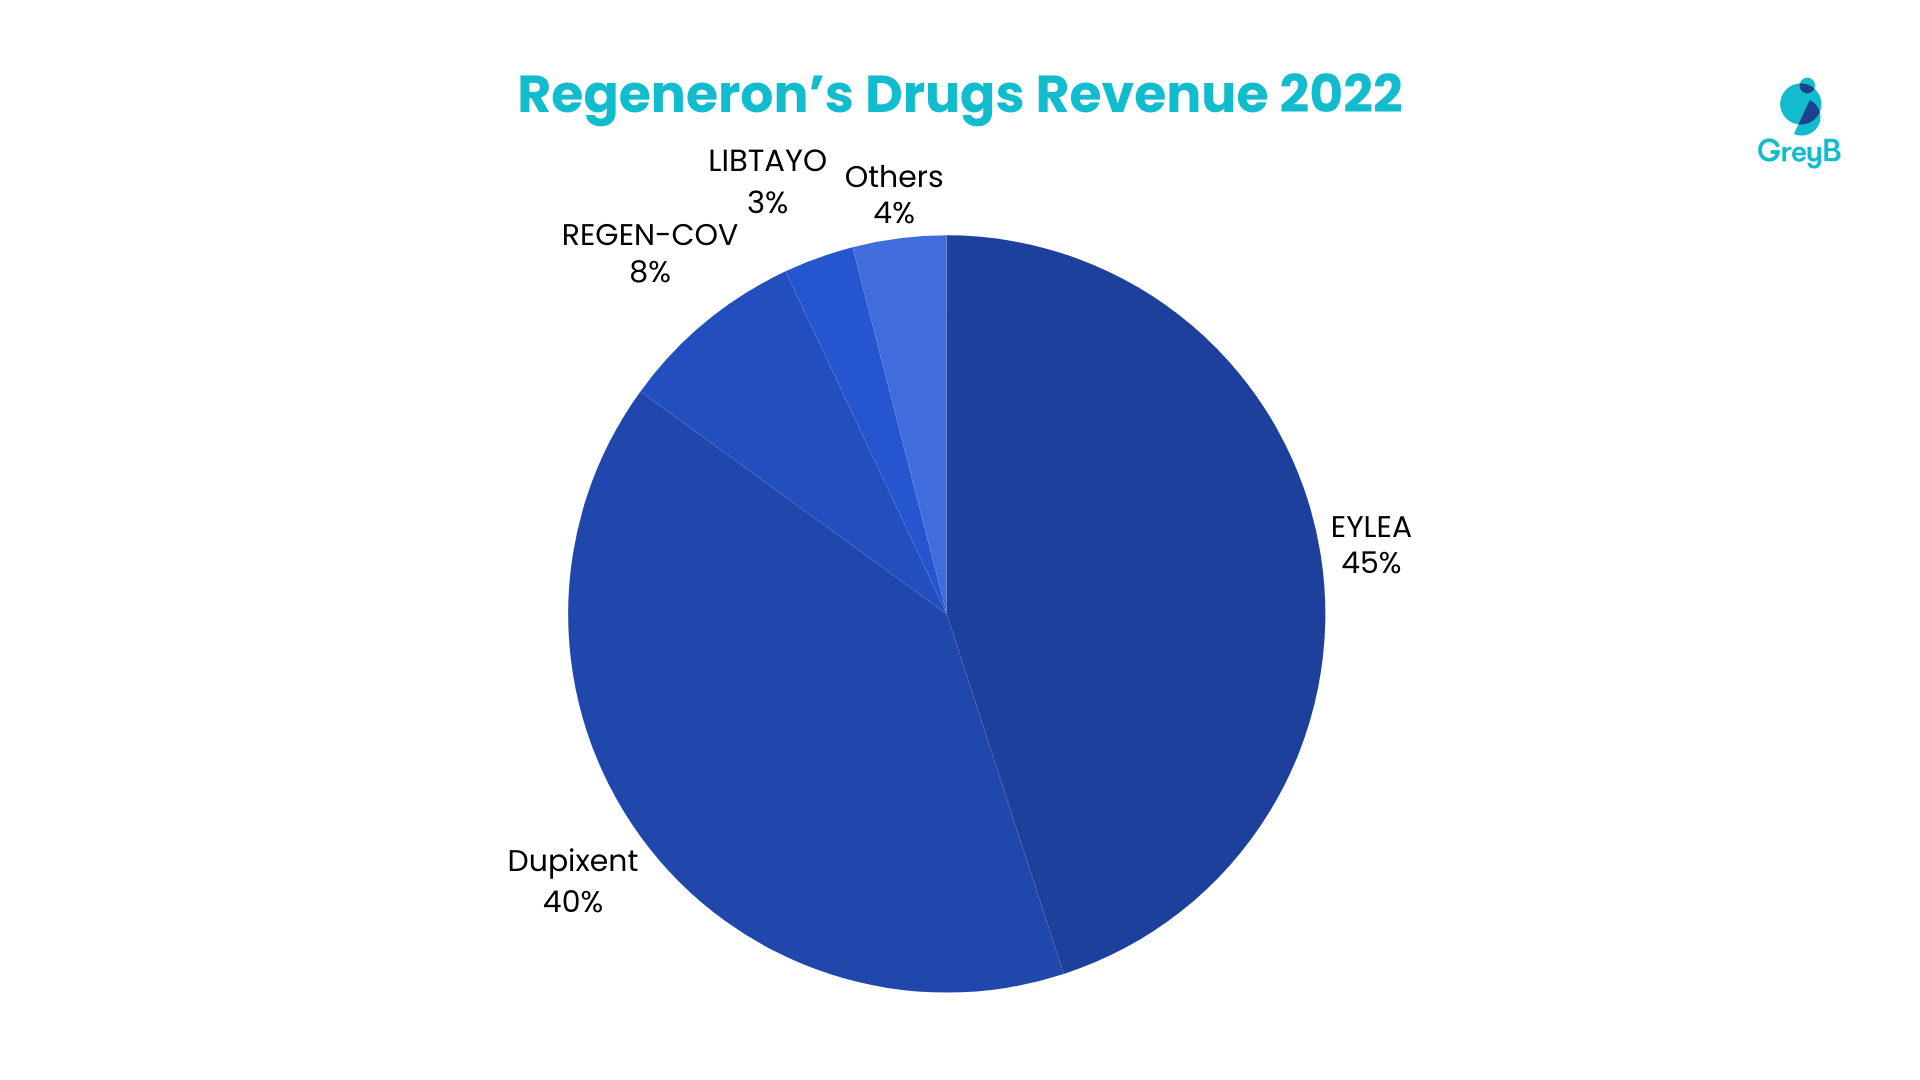 Regeneron Drugs Revenue